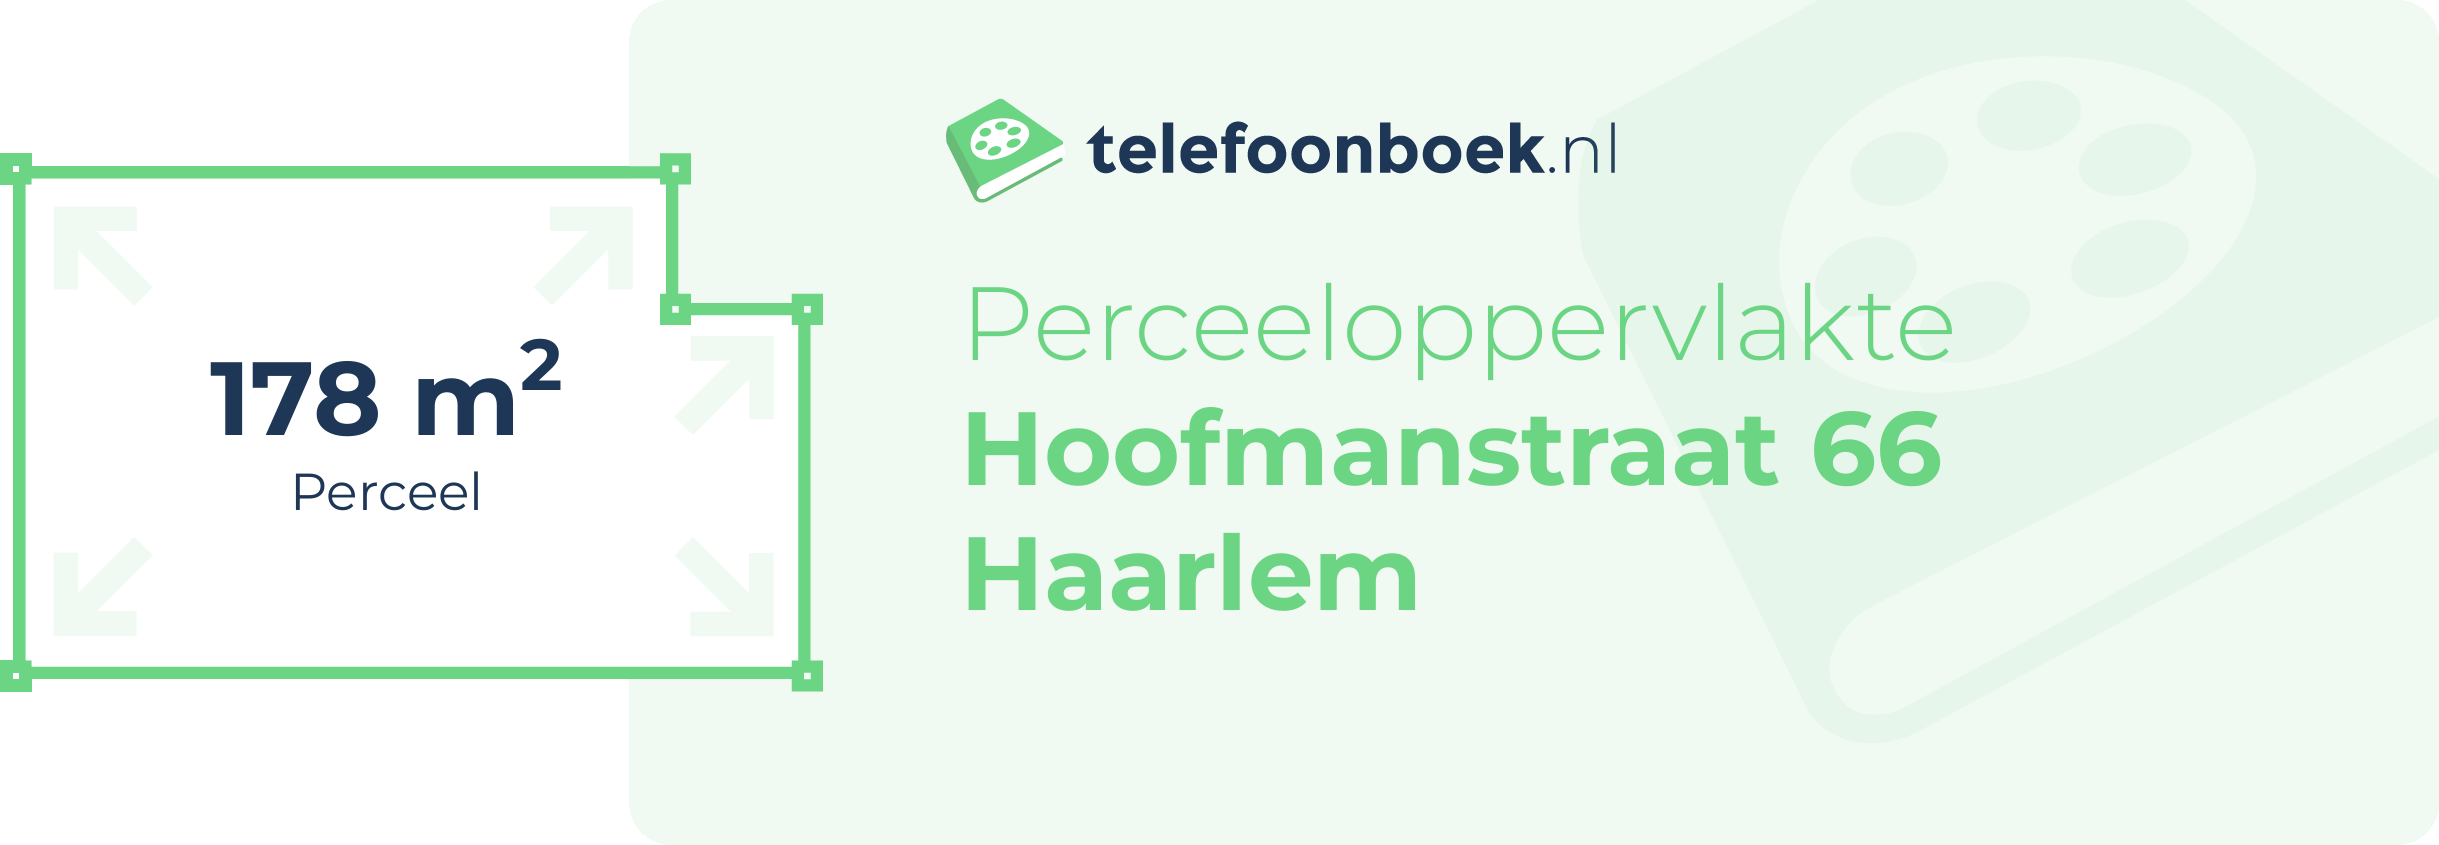 Perceeloppervlakte Hoofmanstraat 66 Haarlem